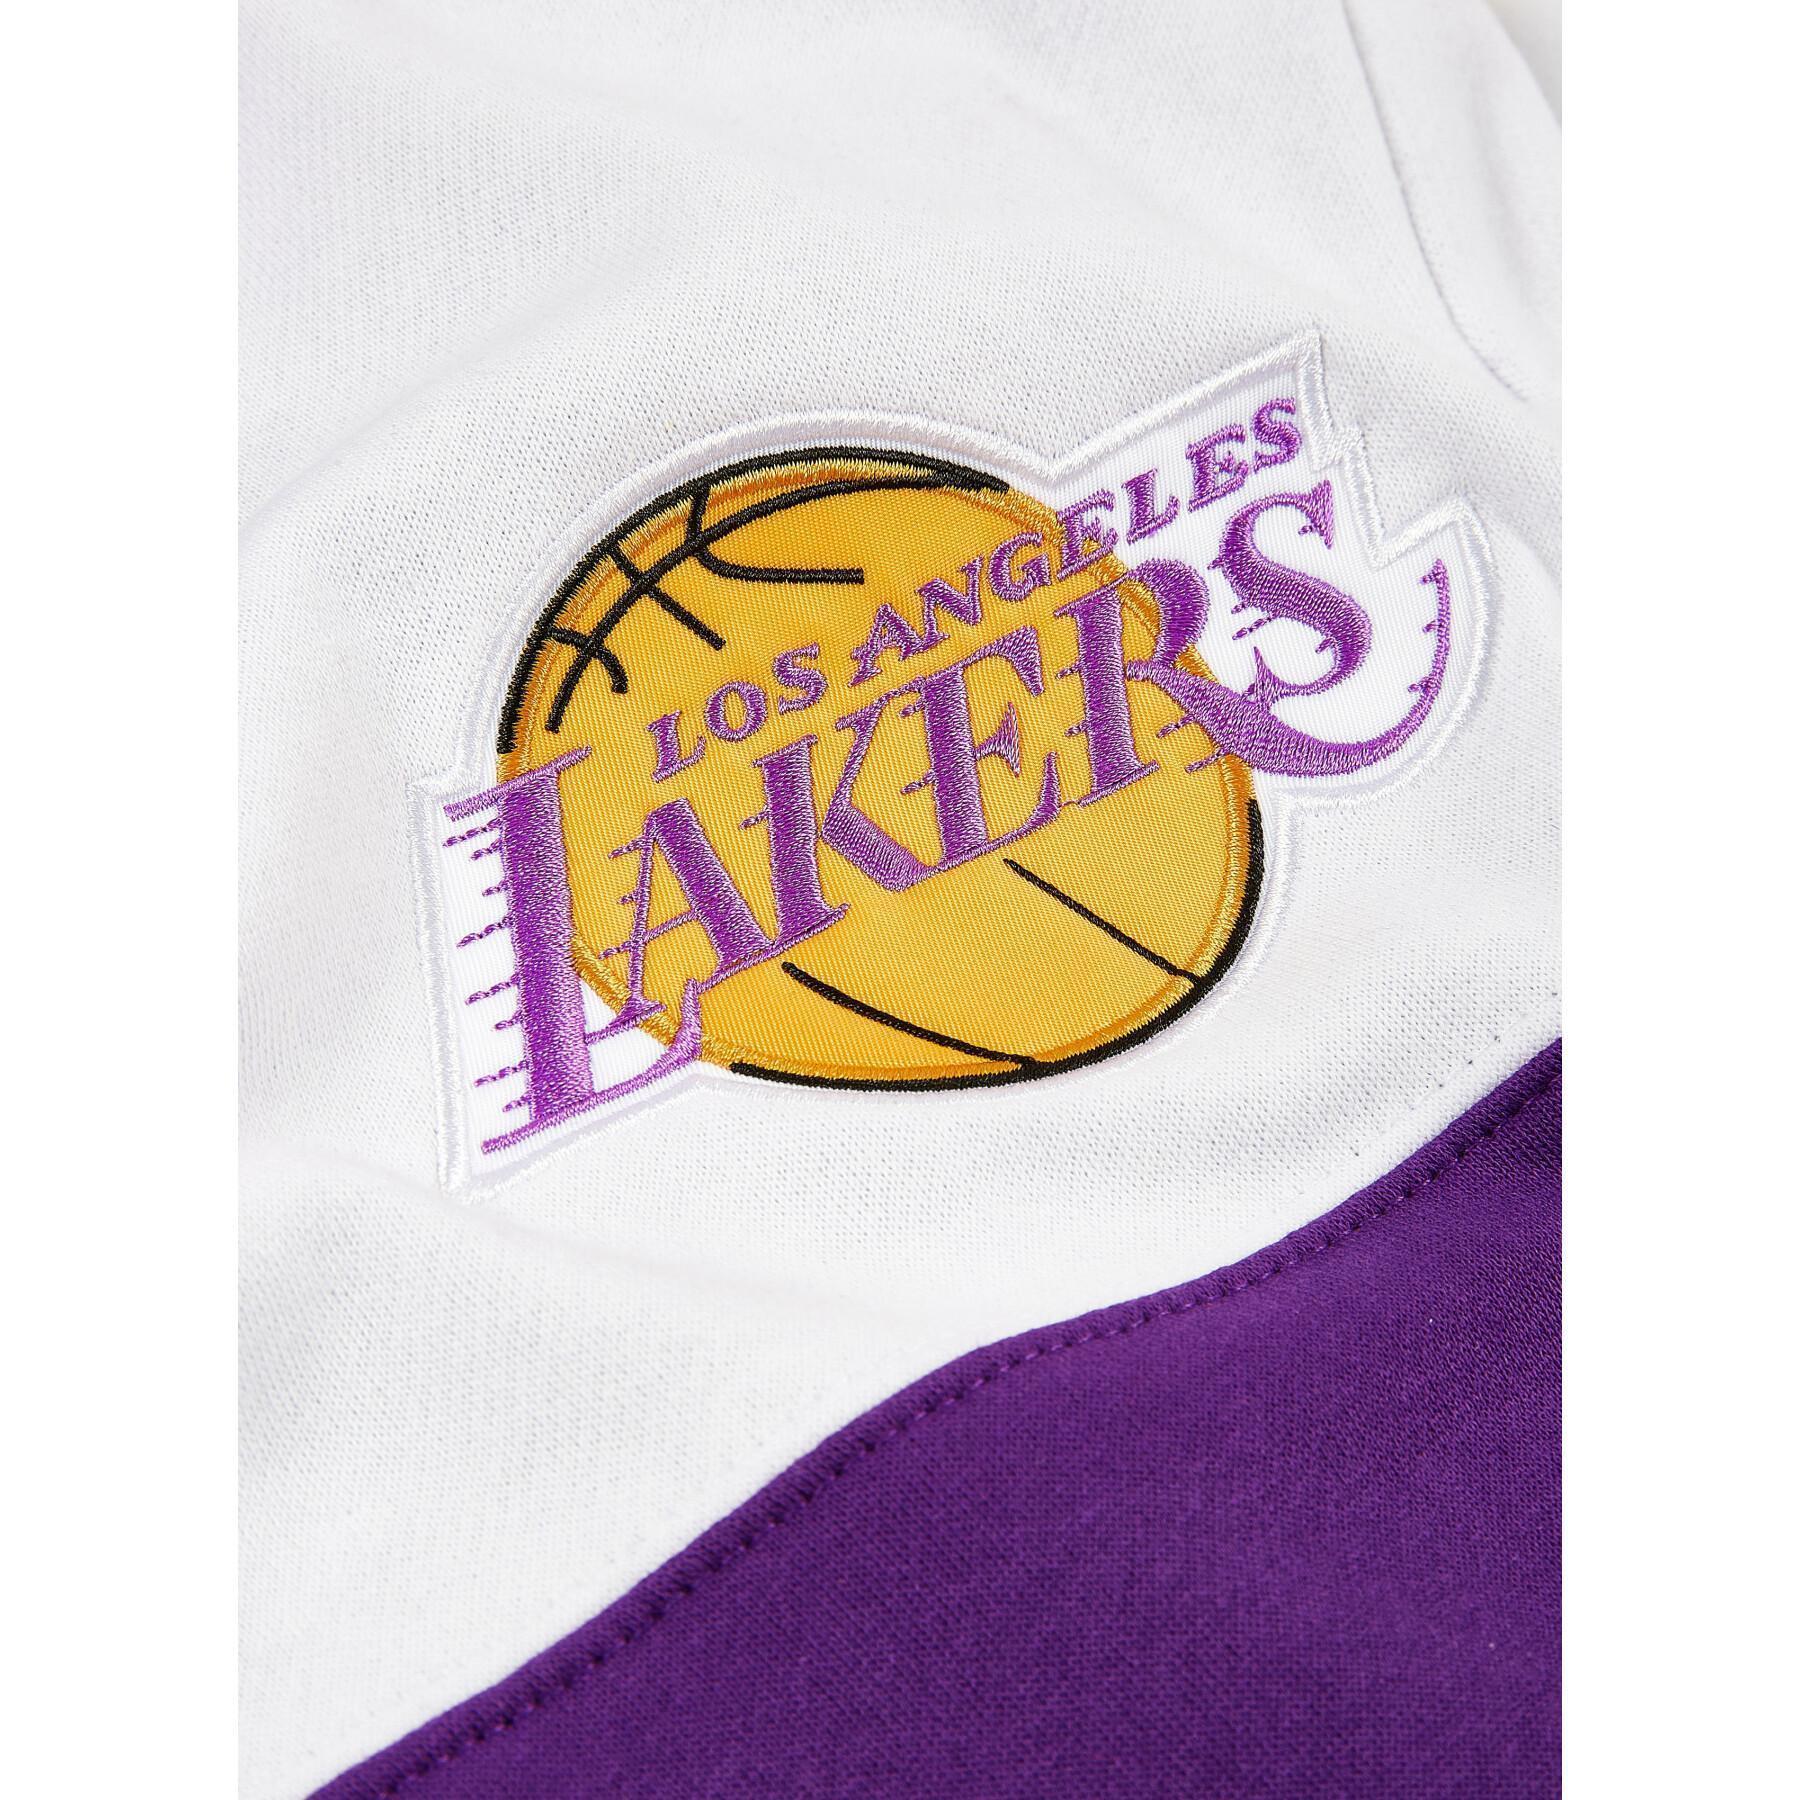 Fusion fleece 2.0 hoodie Los Angeles Lakers